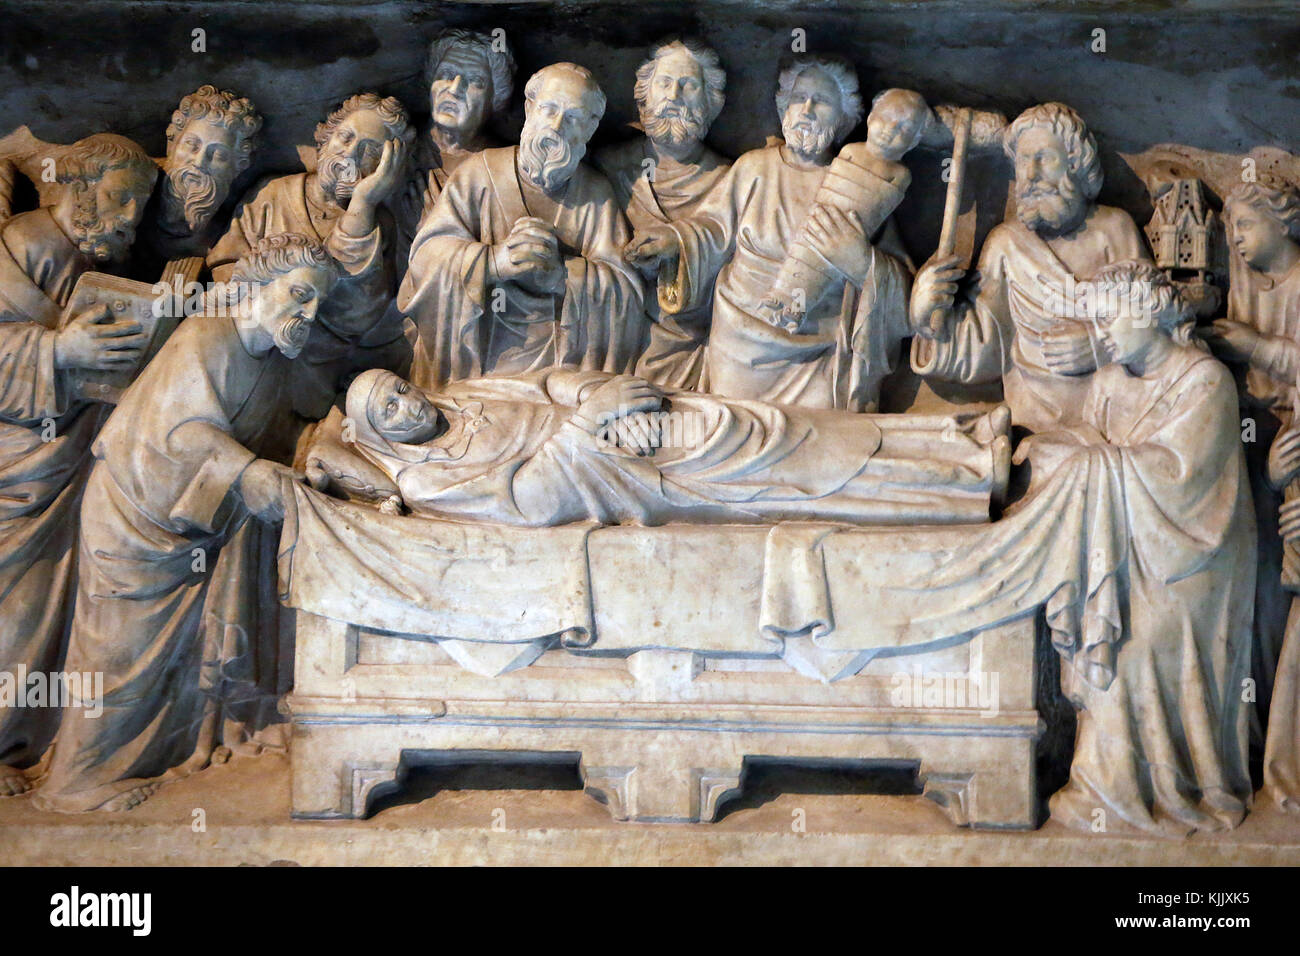 Santa Maria in Trastevere basilica, Rome. Virgin Mary's death. Italy. Stock Photo